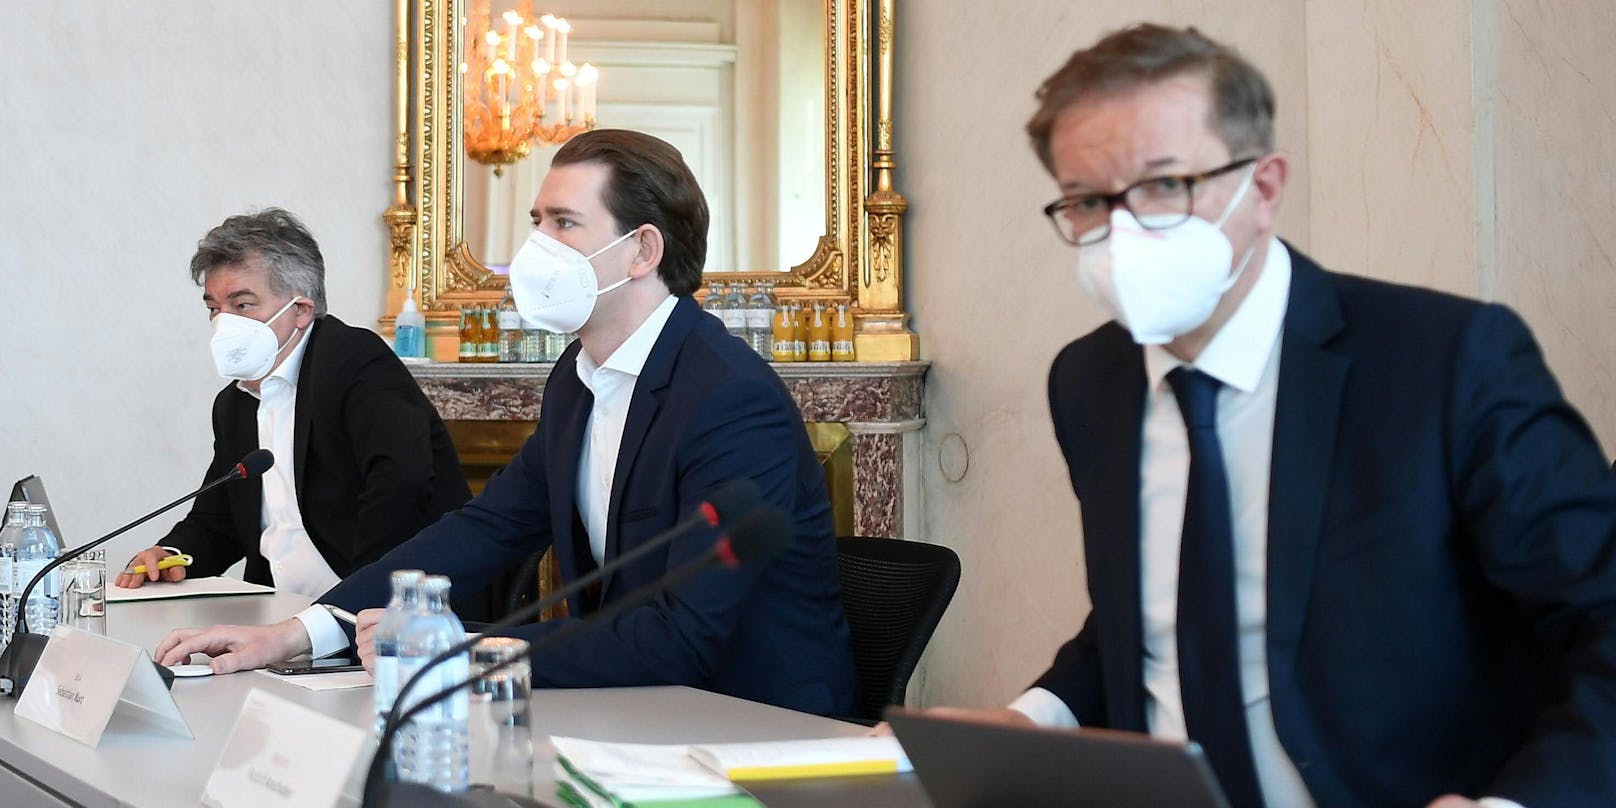 Gesundheitsminister Rudolf Anschober, Bundeskanzler Sebastian Kurz und Vizekanzler Werner Kogler